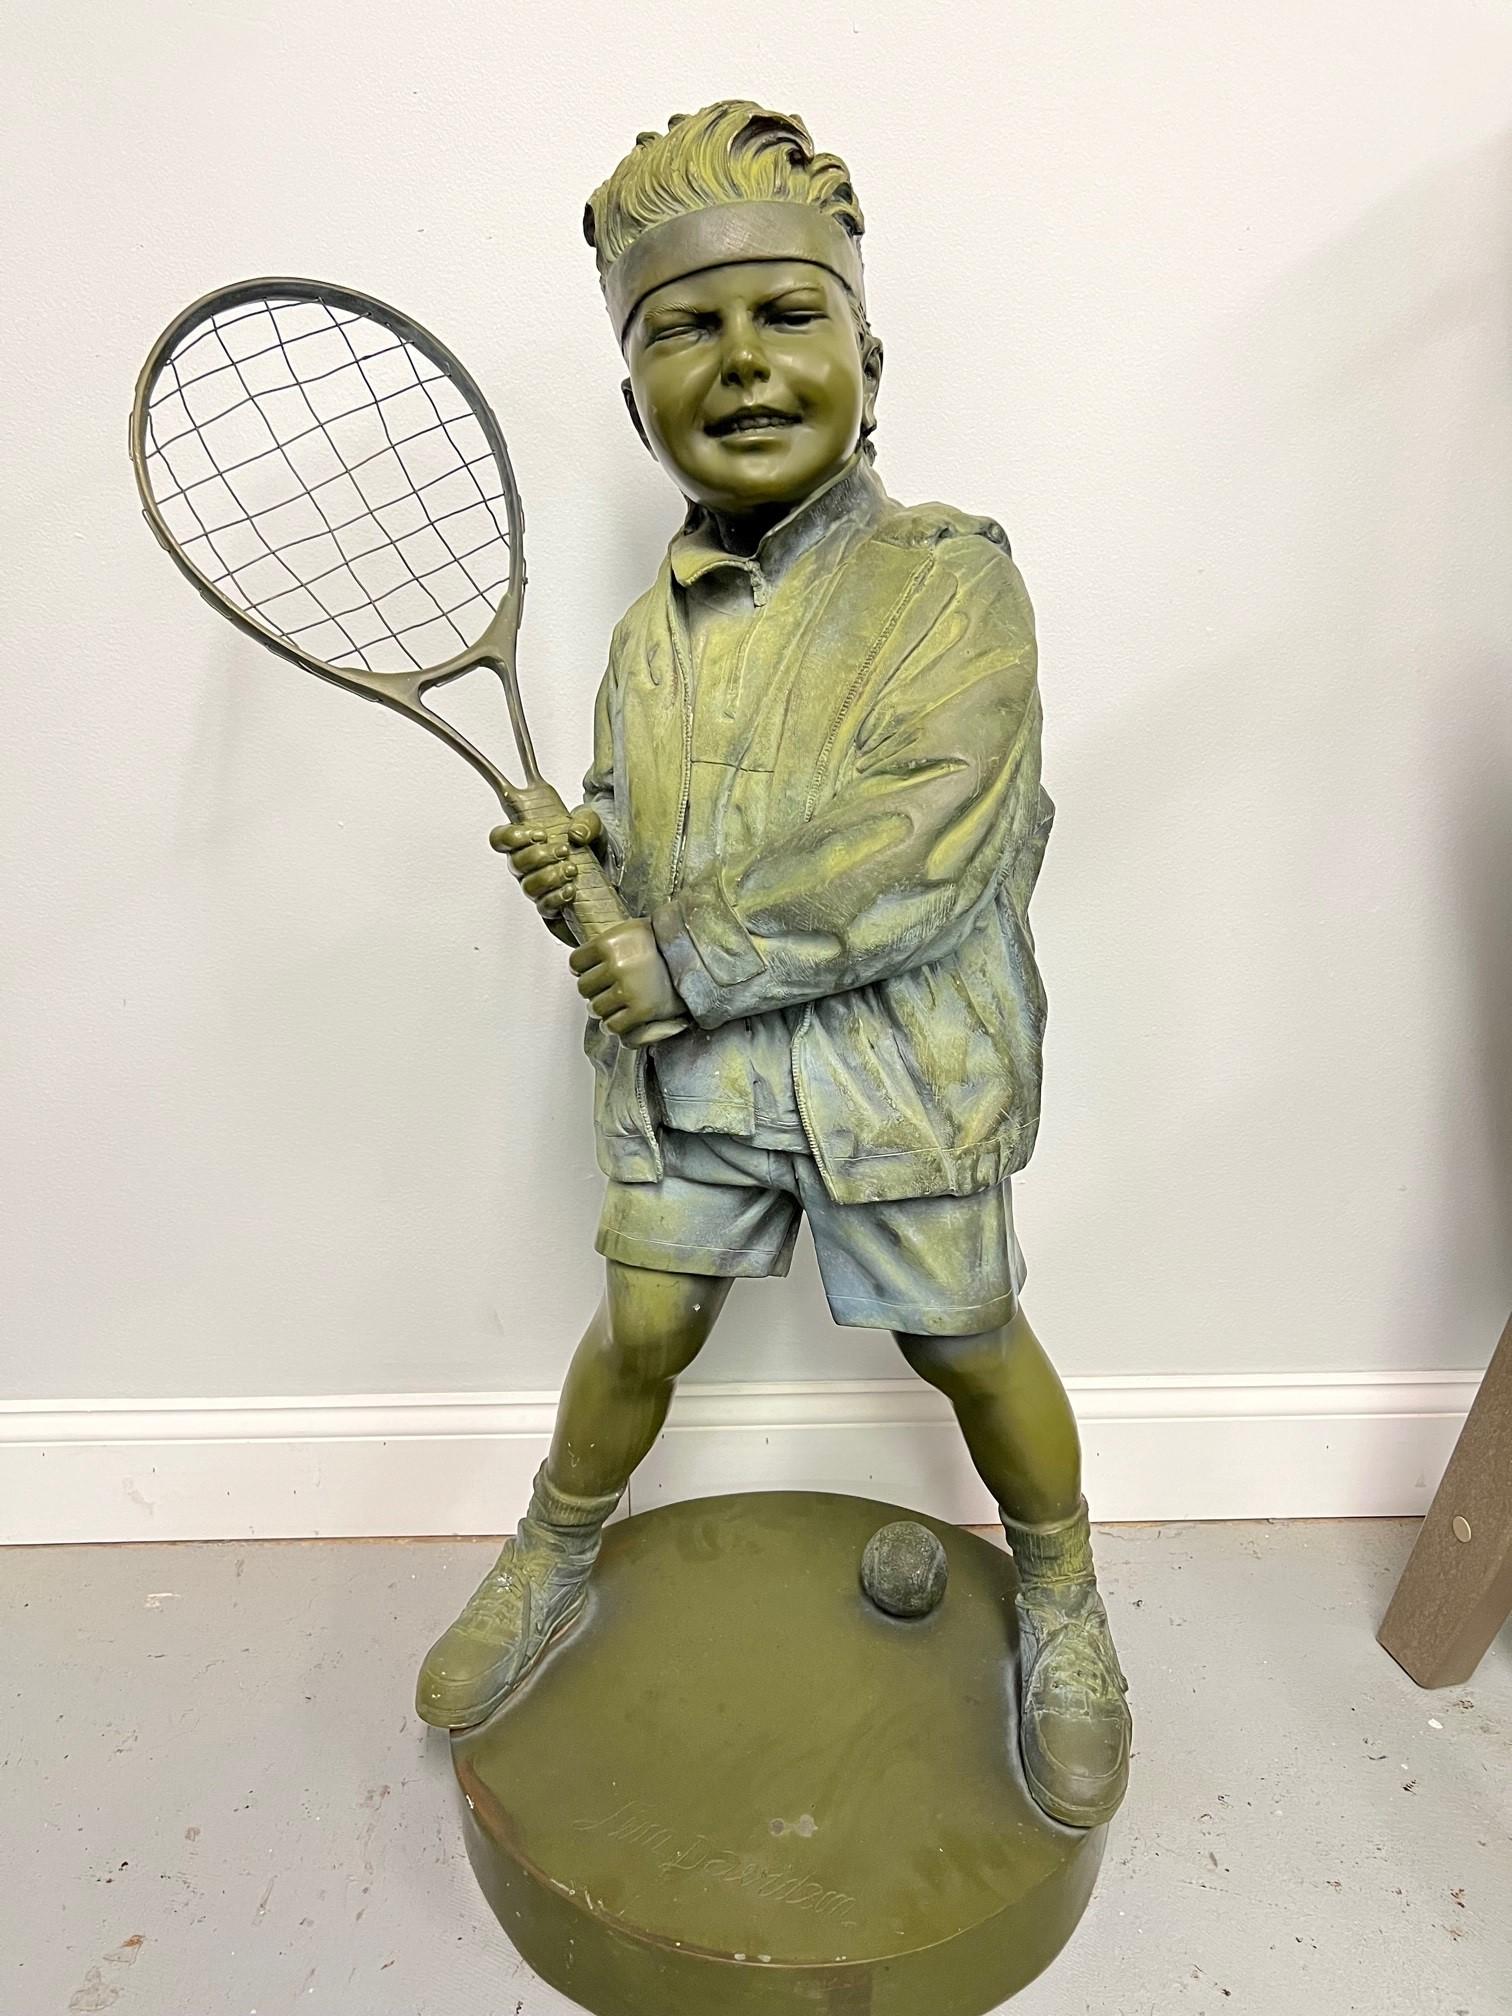 Bronzestatue aus dem späten 20. Jahrhundert, die einen Tennis oder Pickleball spielenden Jungen darstellt. Die Bronzestatue ist in sehr gutem Zustand, hat aber draußen gestanden und ist verwittert, sieht aber immer noch gut aus. Ein lustiges Stück,